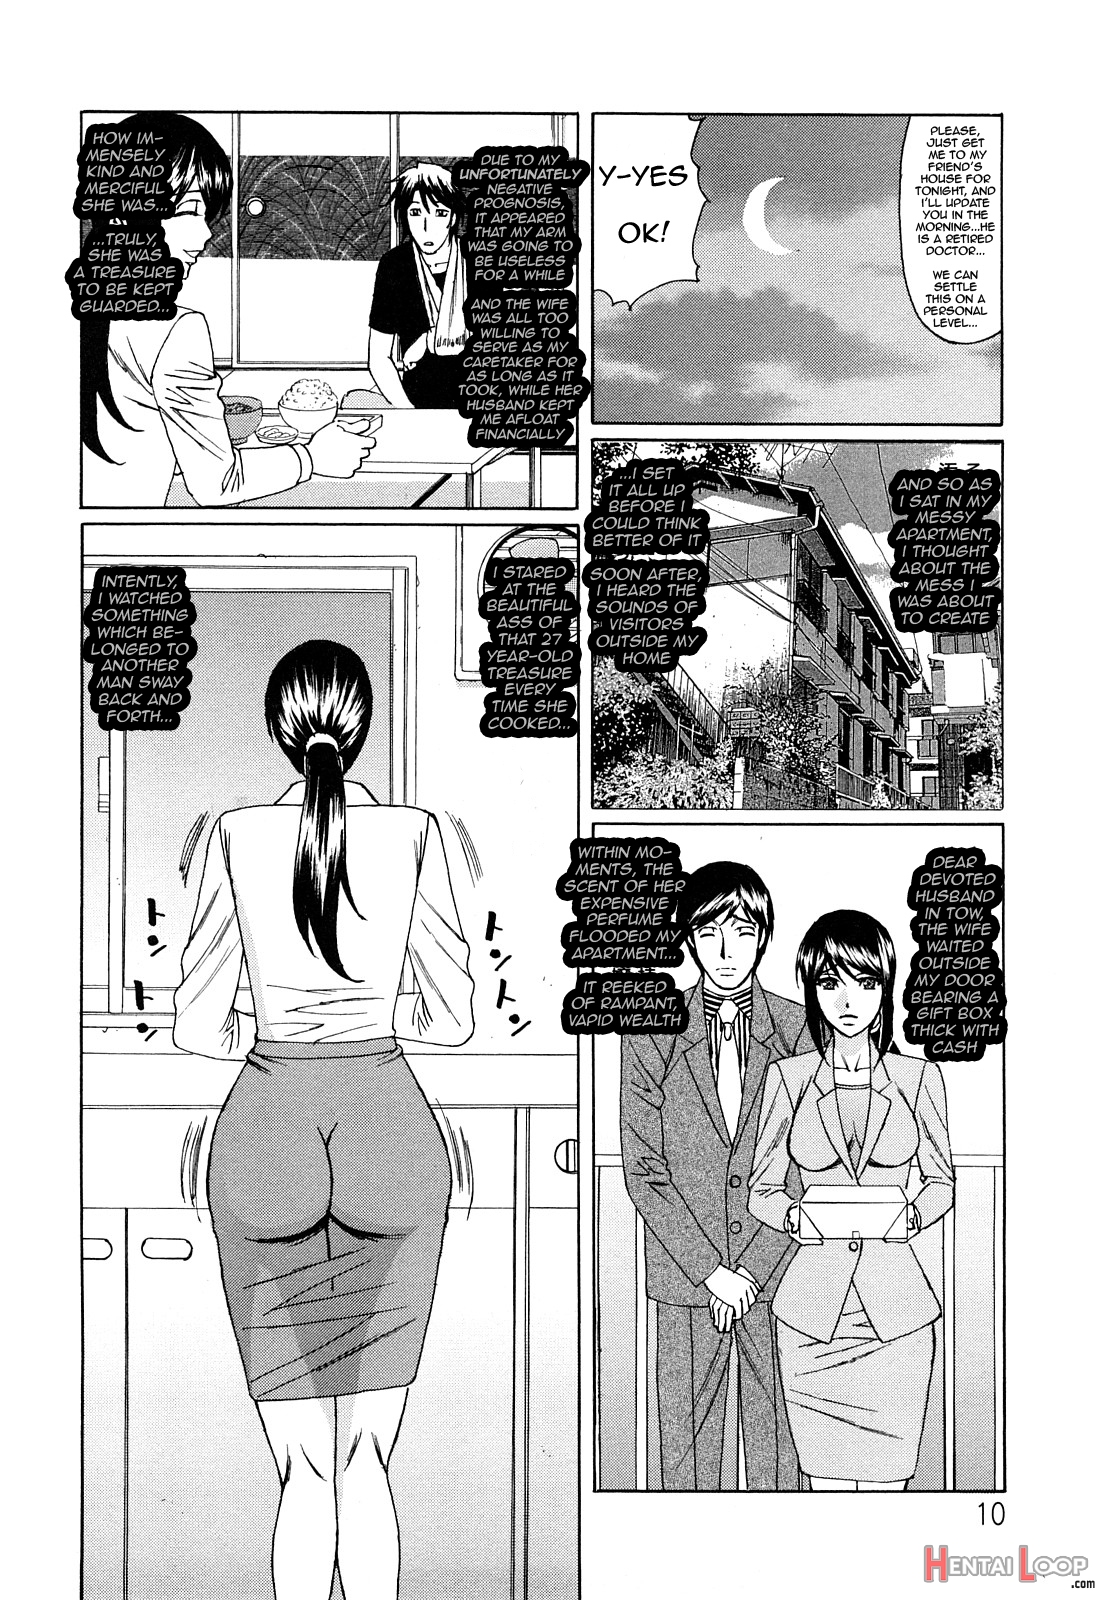 Kyouhaku Sareta Wakazumach. 1 page 6